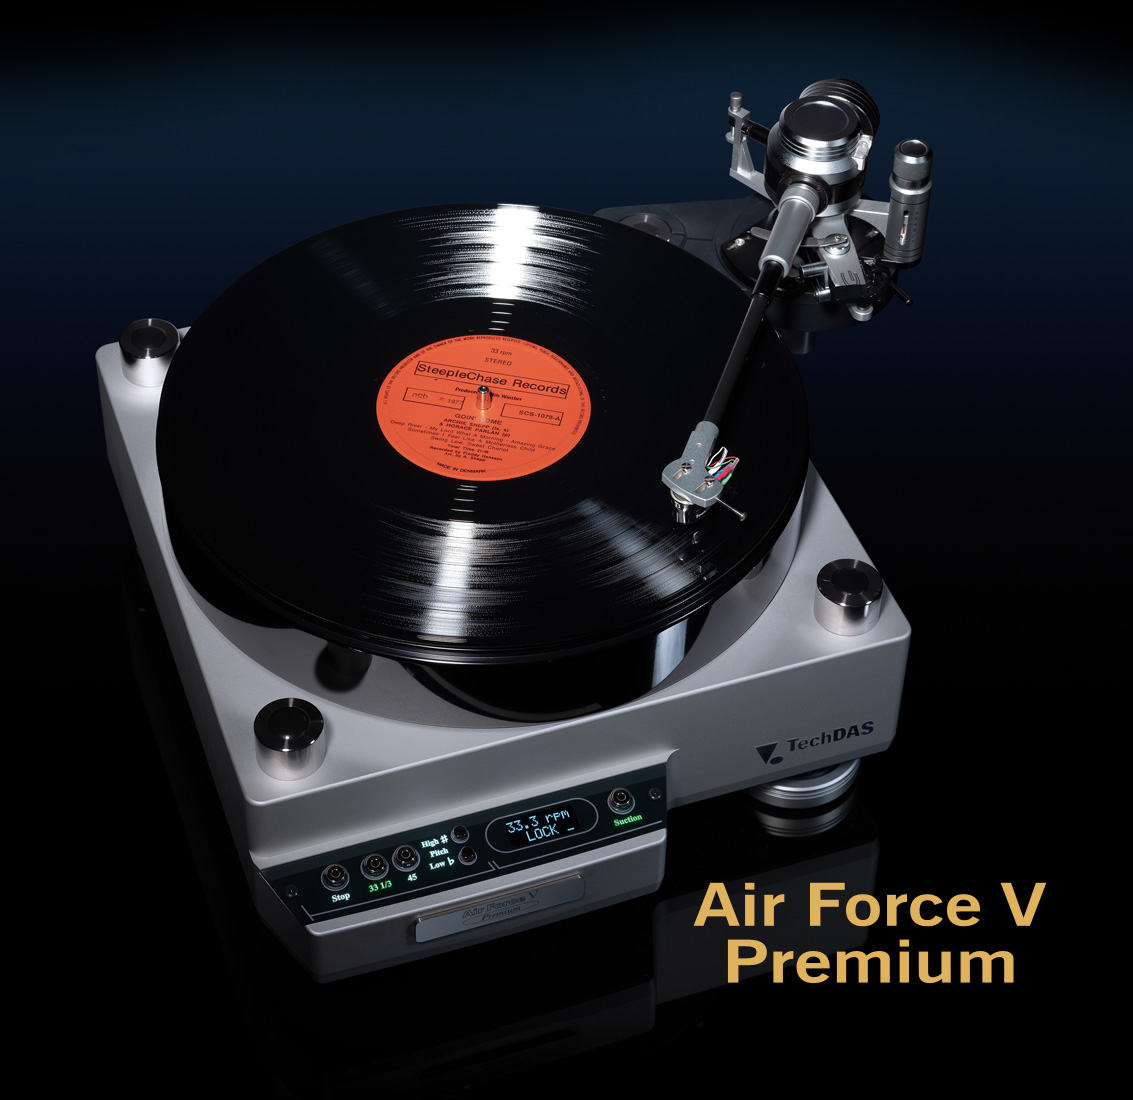 techdas air force 3 premium price